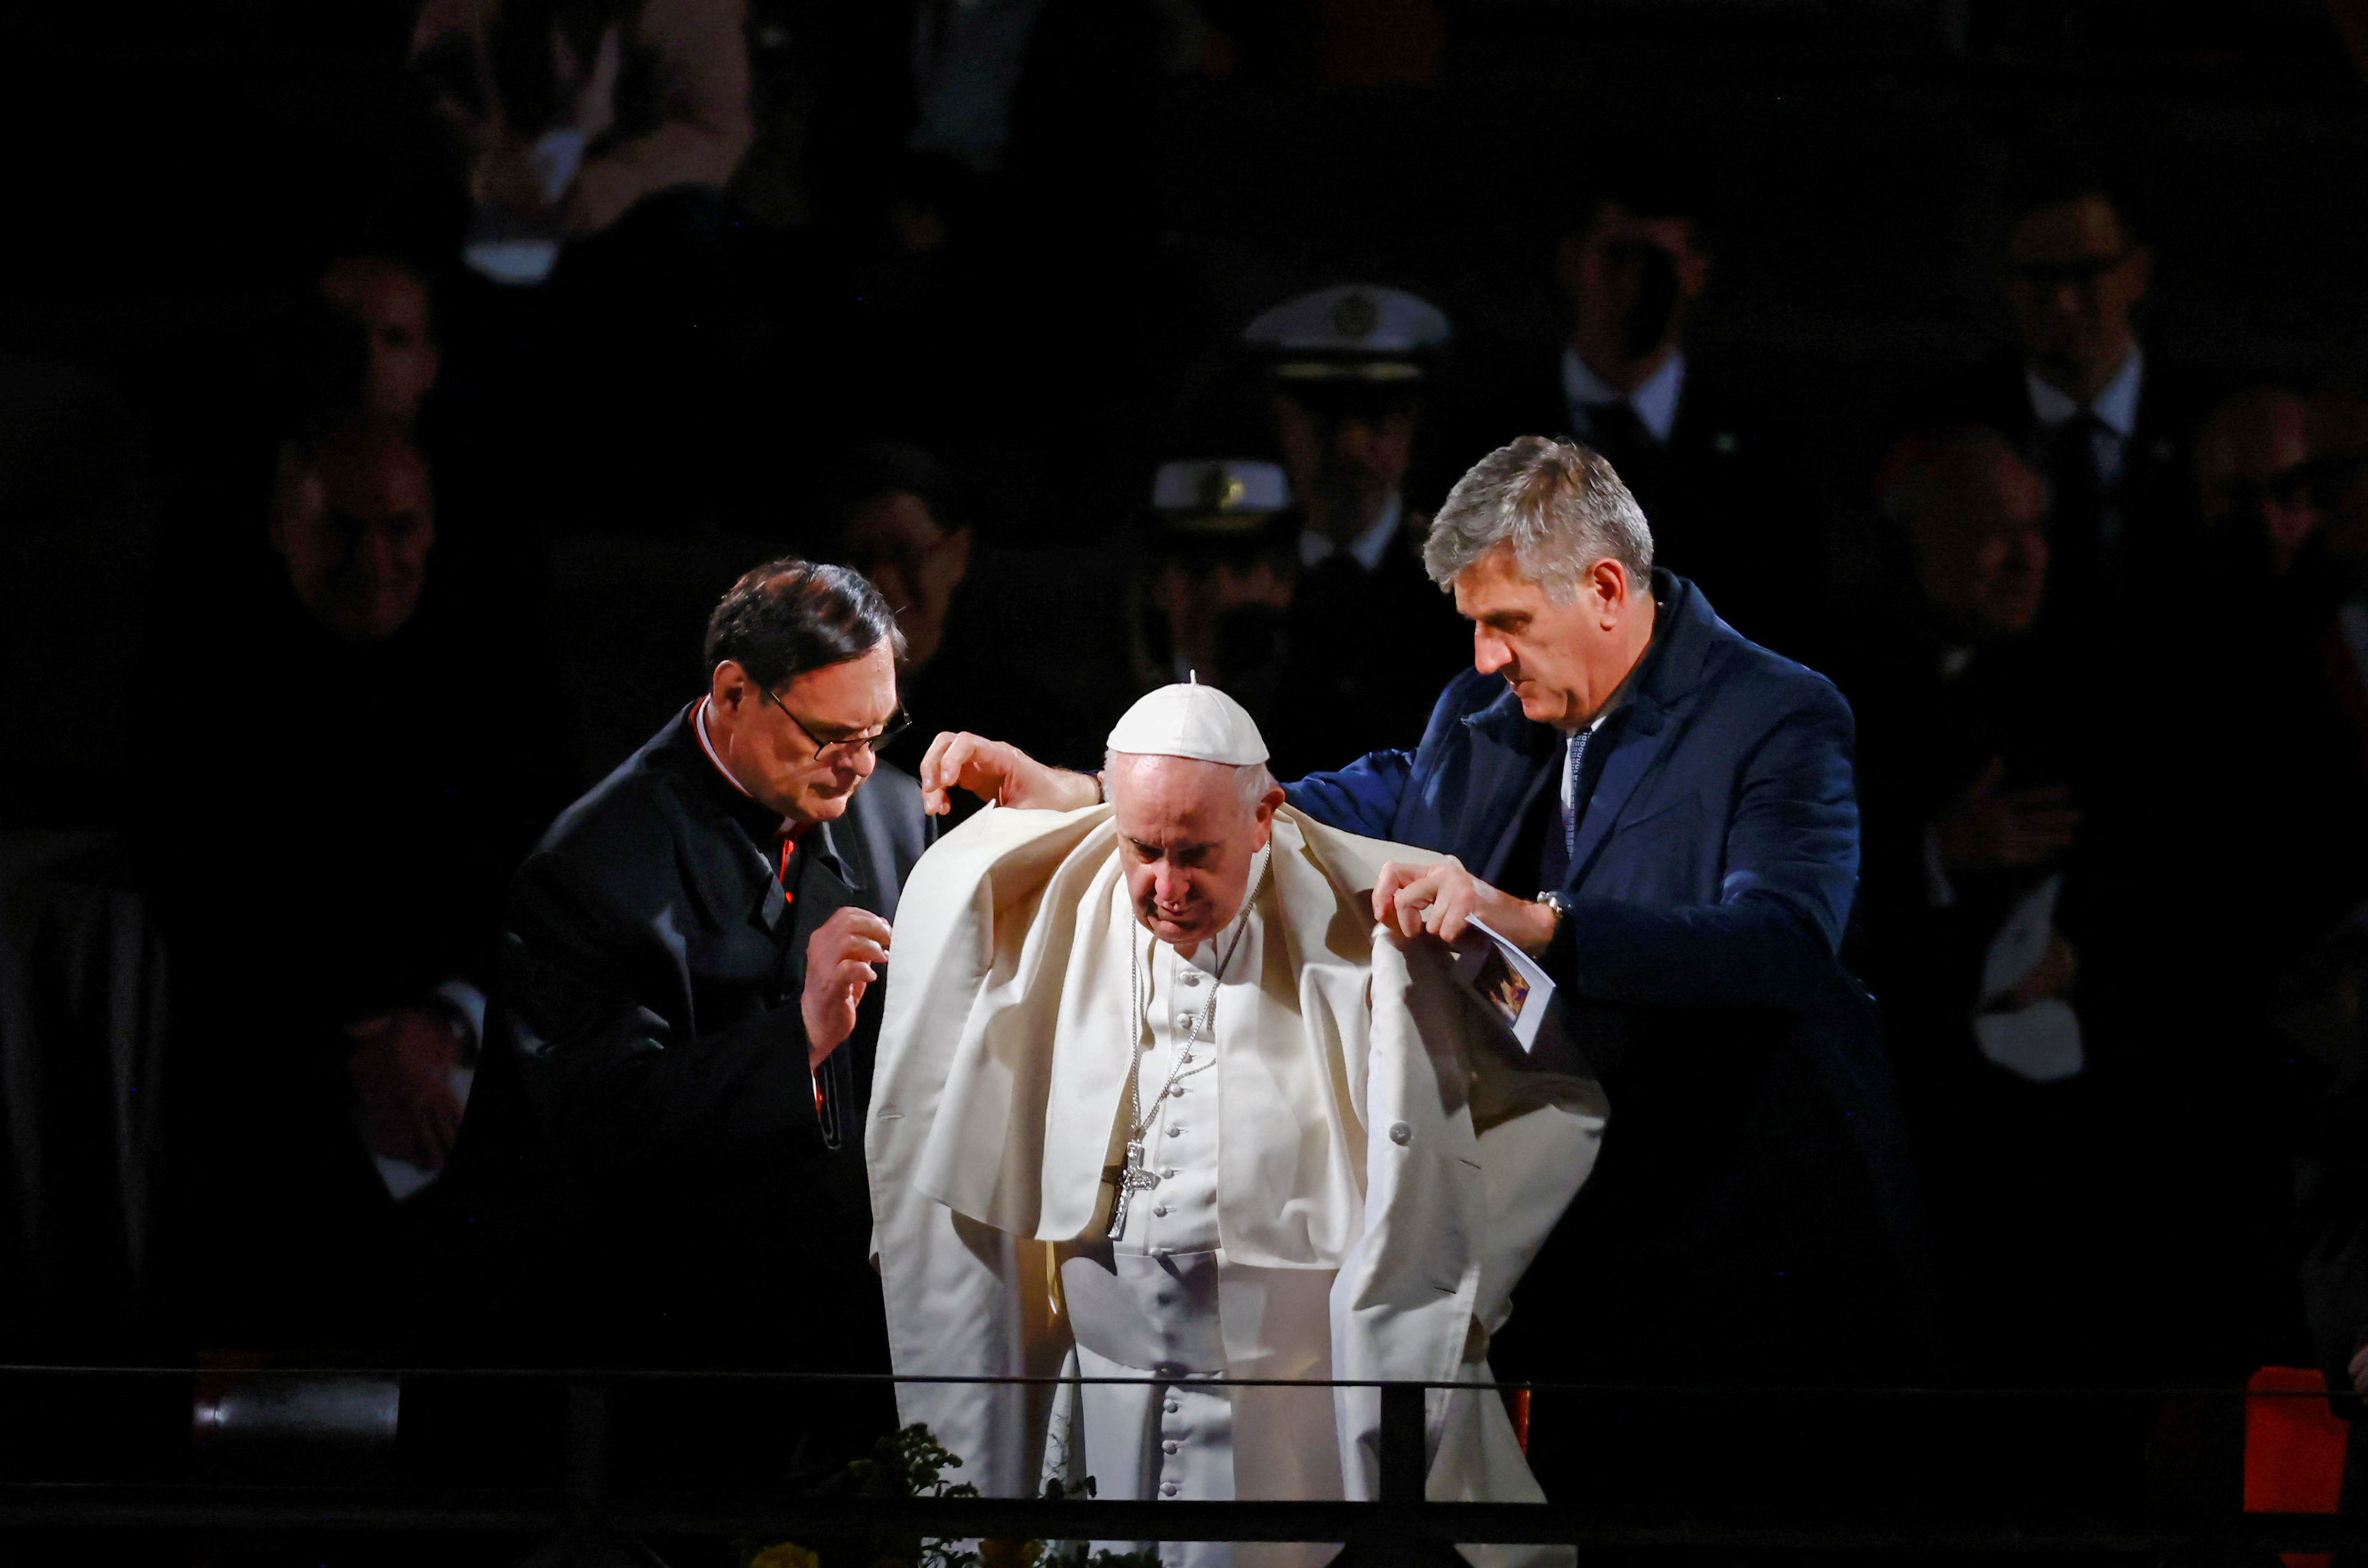 El Papa Francisco se prepara para presidir el Vía Crucis en el coliseo (REUTERS/Yara Nardi)